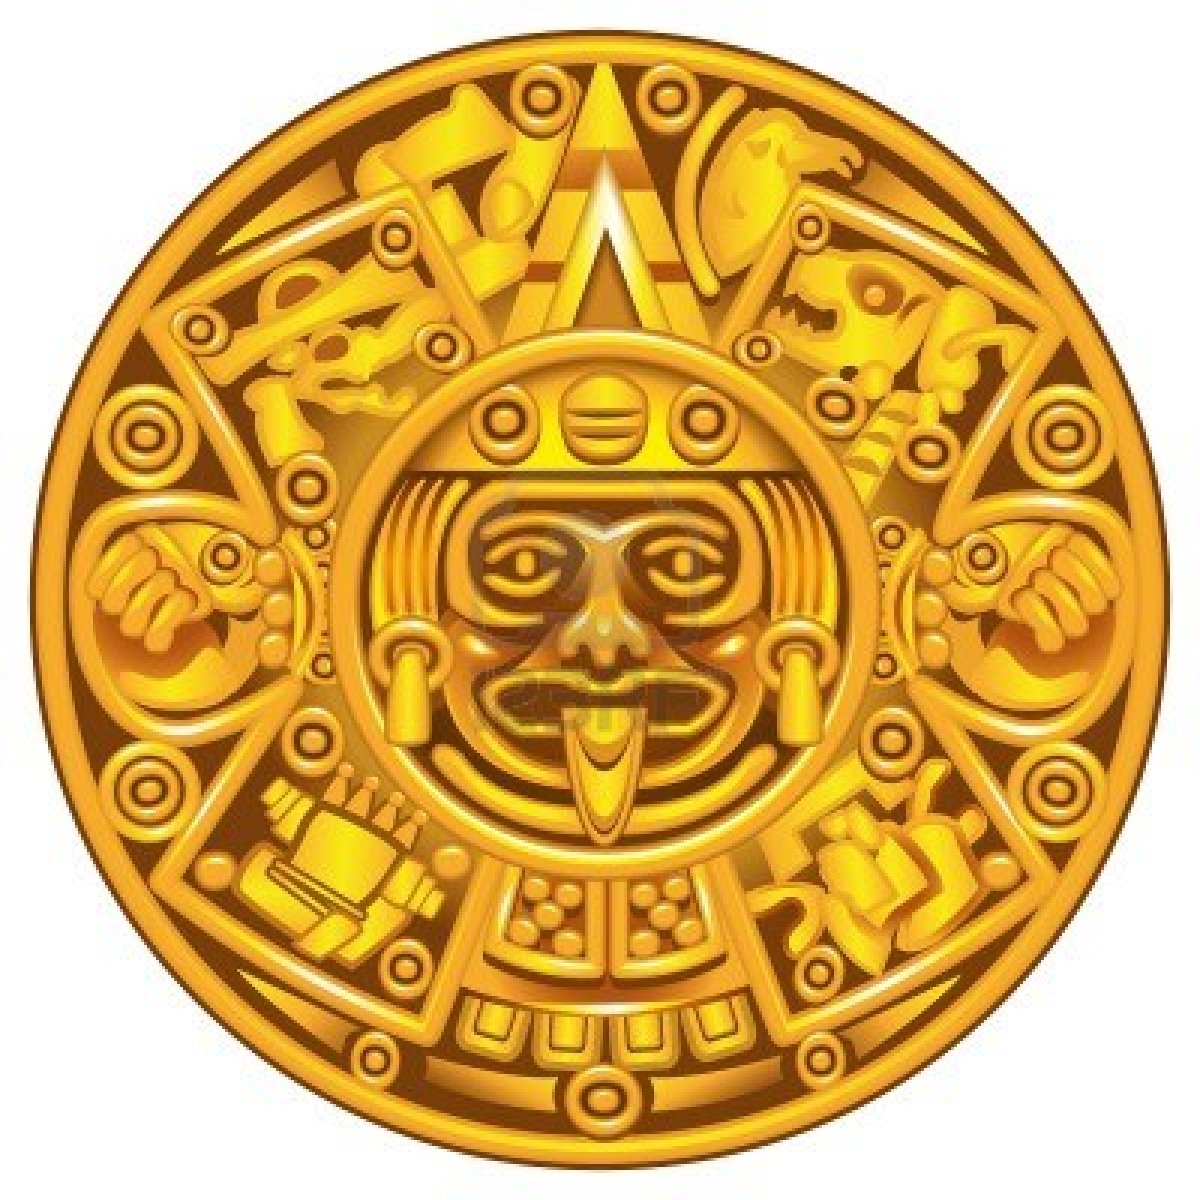 У майя был свой календарь, согласно которому они делили год на 18 месяцев (у каждого месяца было по 20 дней)